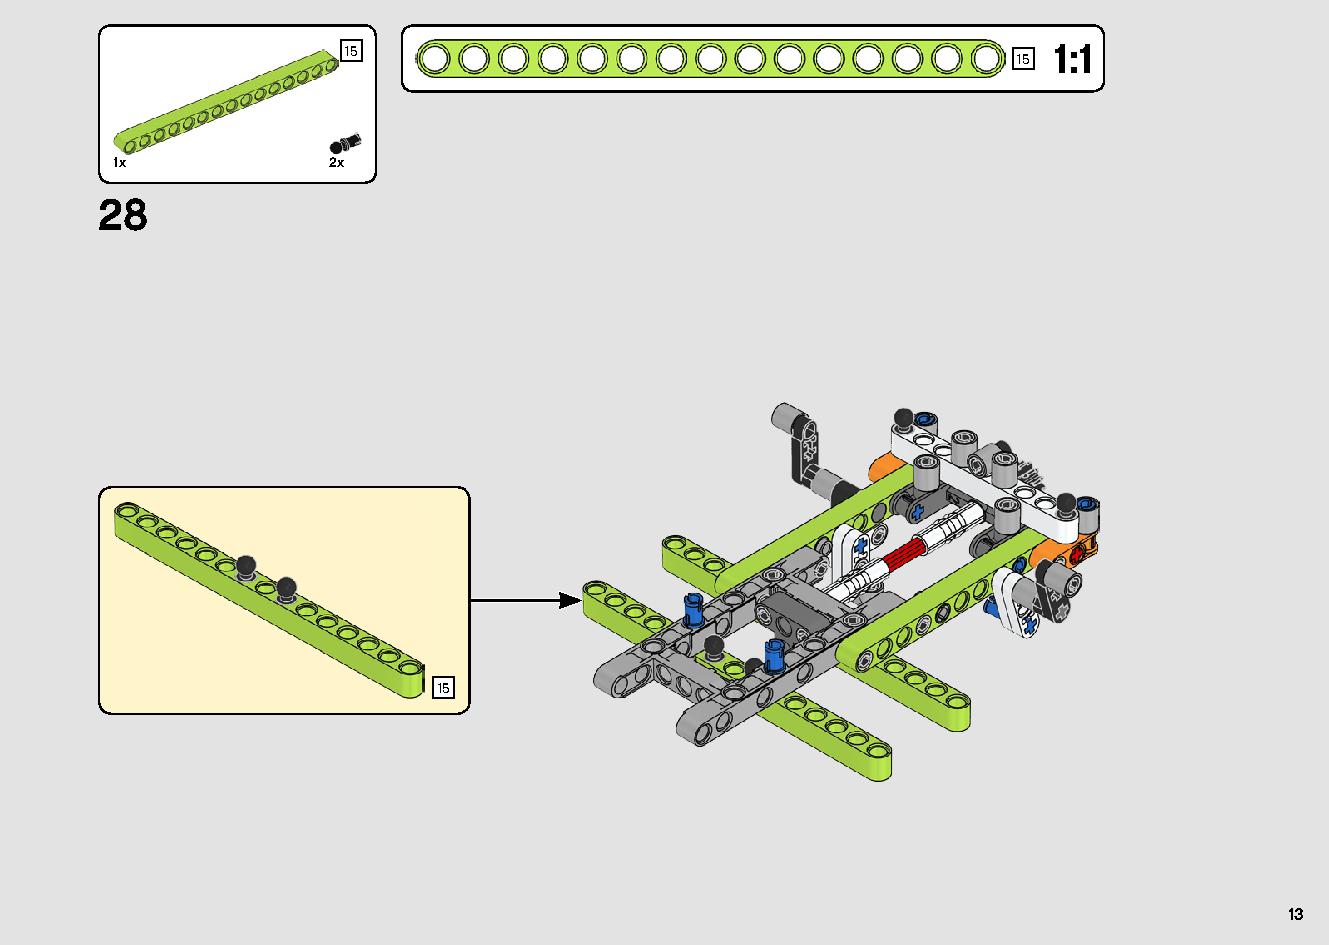 カタマランヨット 42105 レゴの商品情報 レゴの説明書・組立方法 13 page